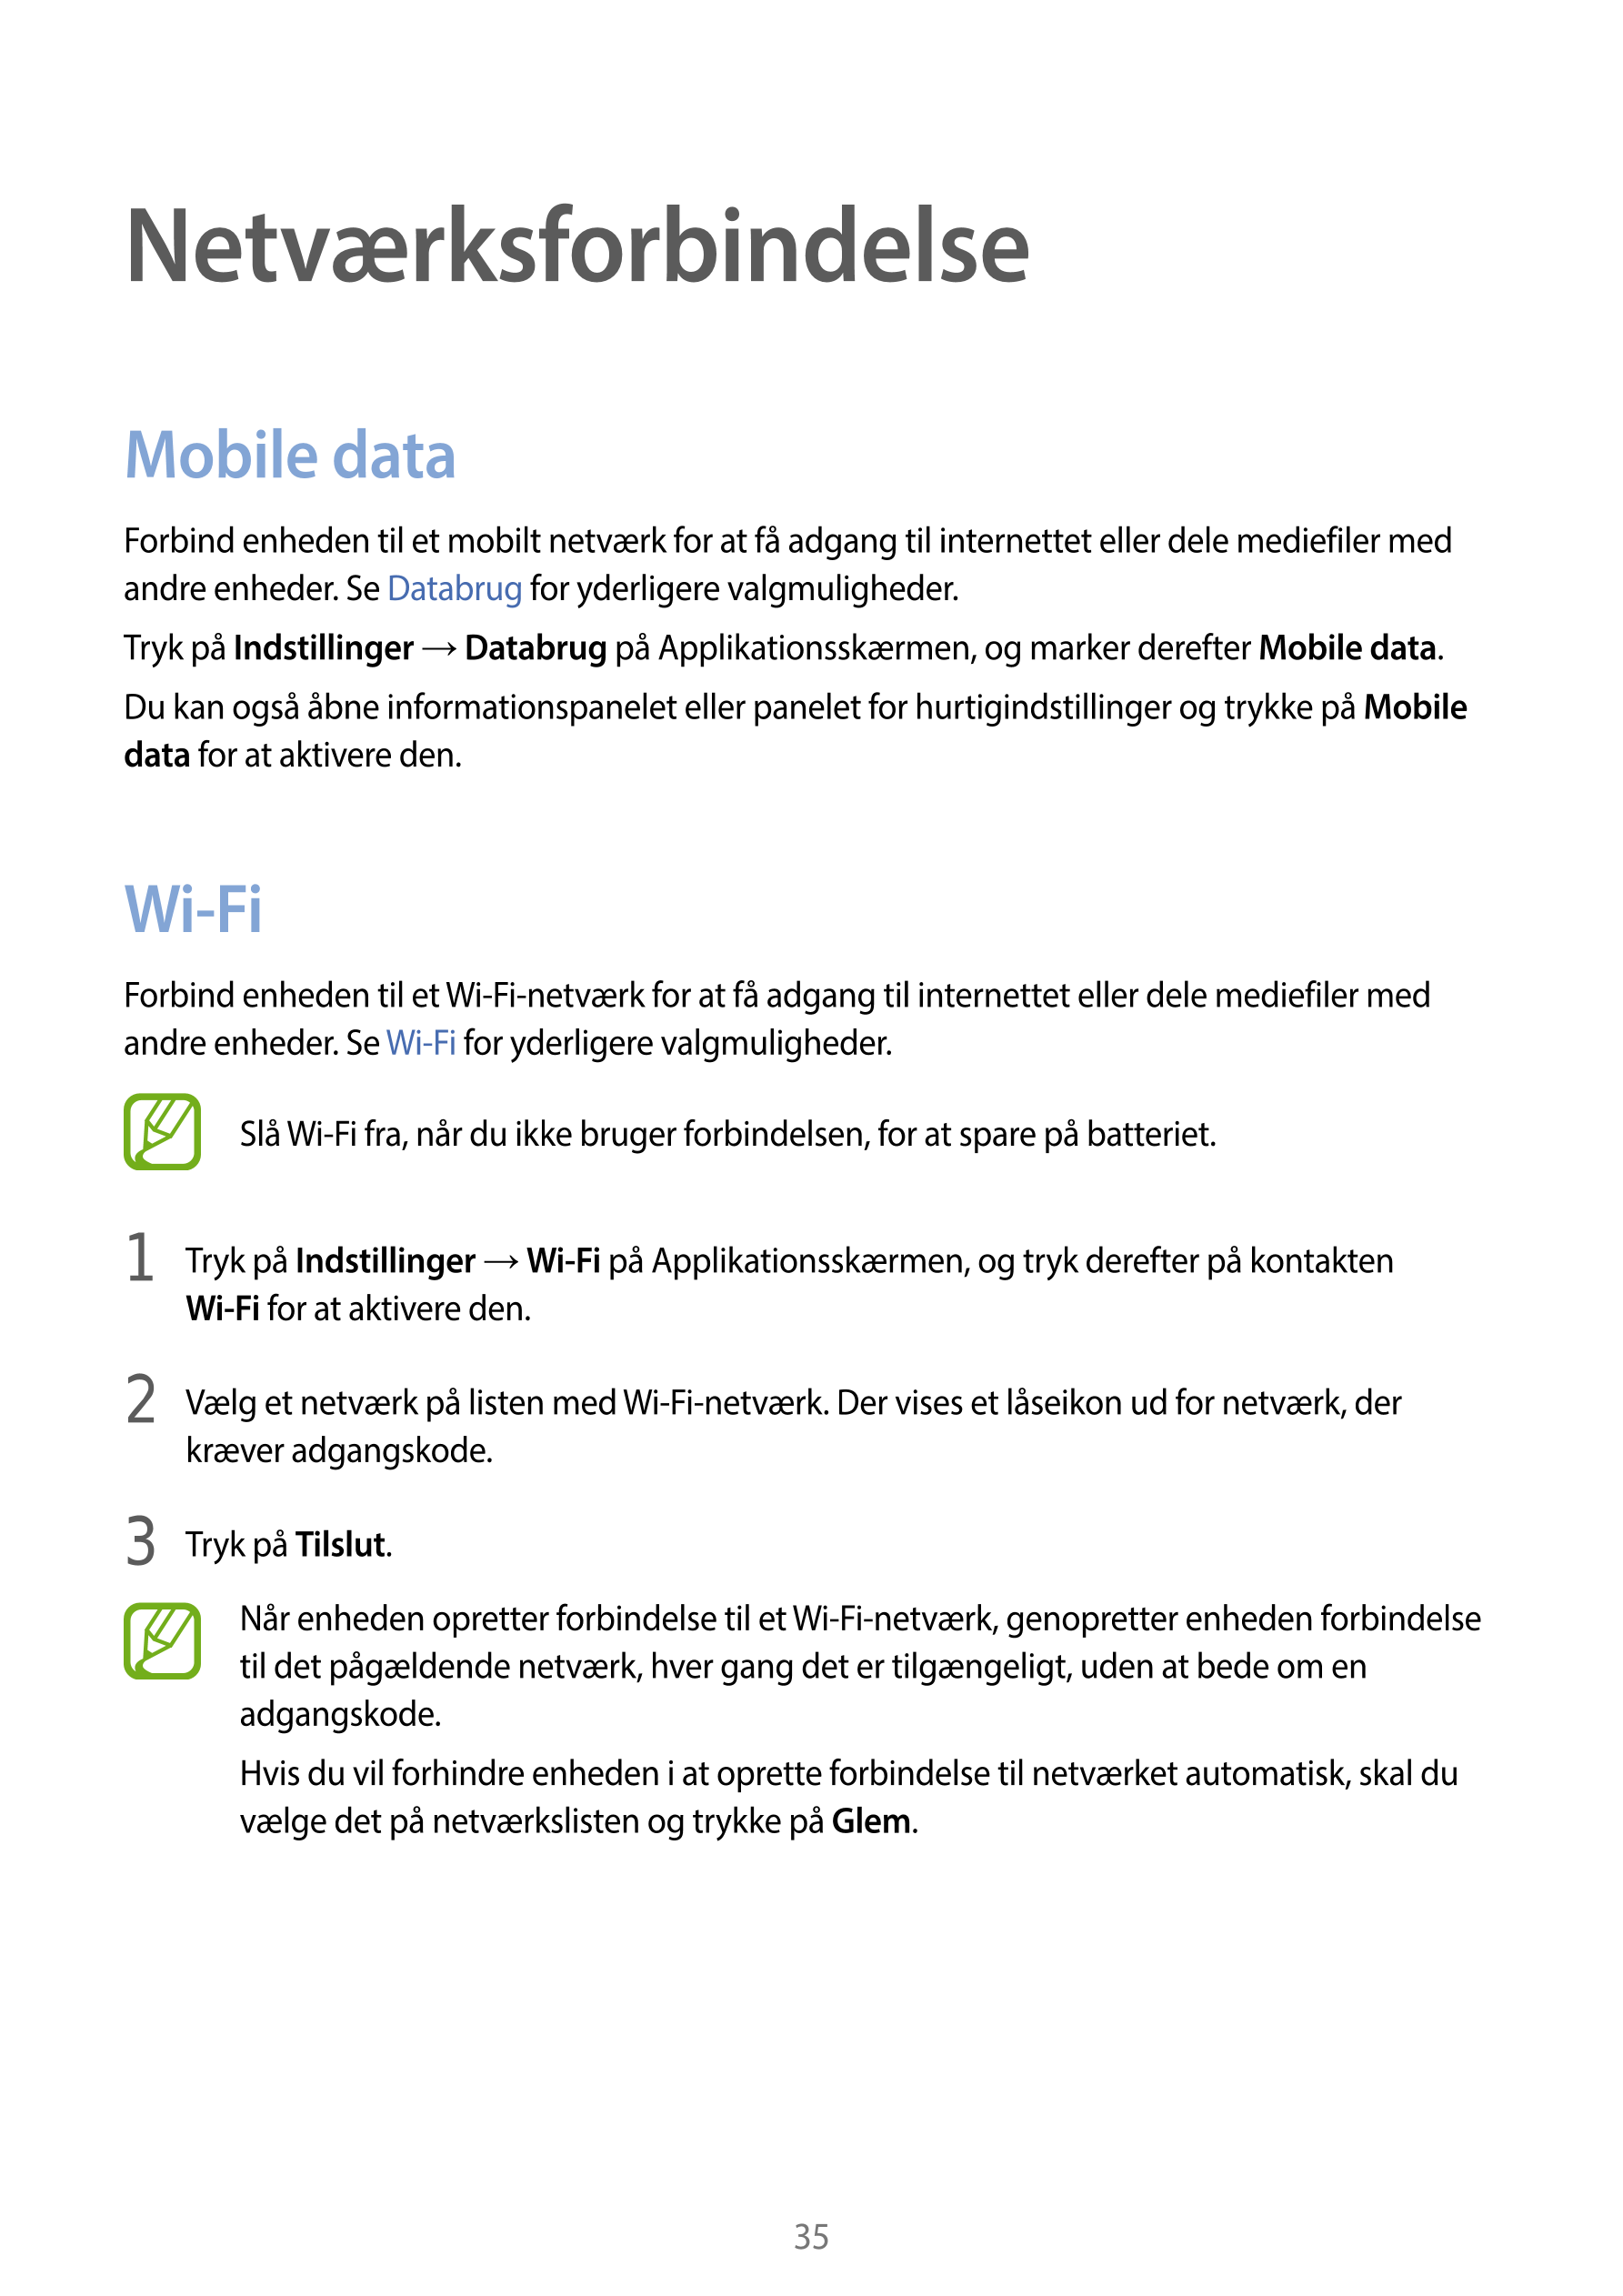 Netværksforbindelse
Mobile data
Forbind enheden til et mobilt netværk for at få adgang til internettet eller dele mediefiler med